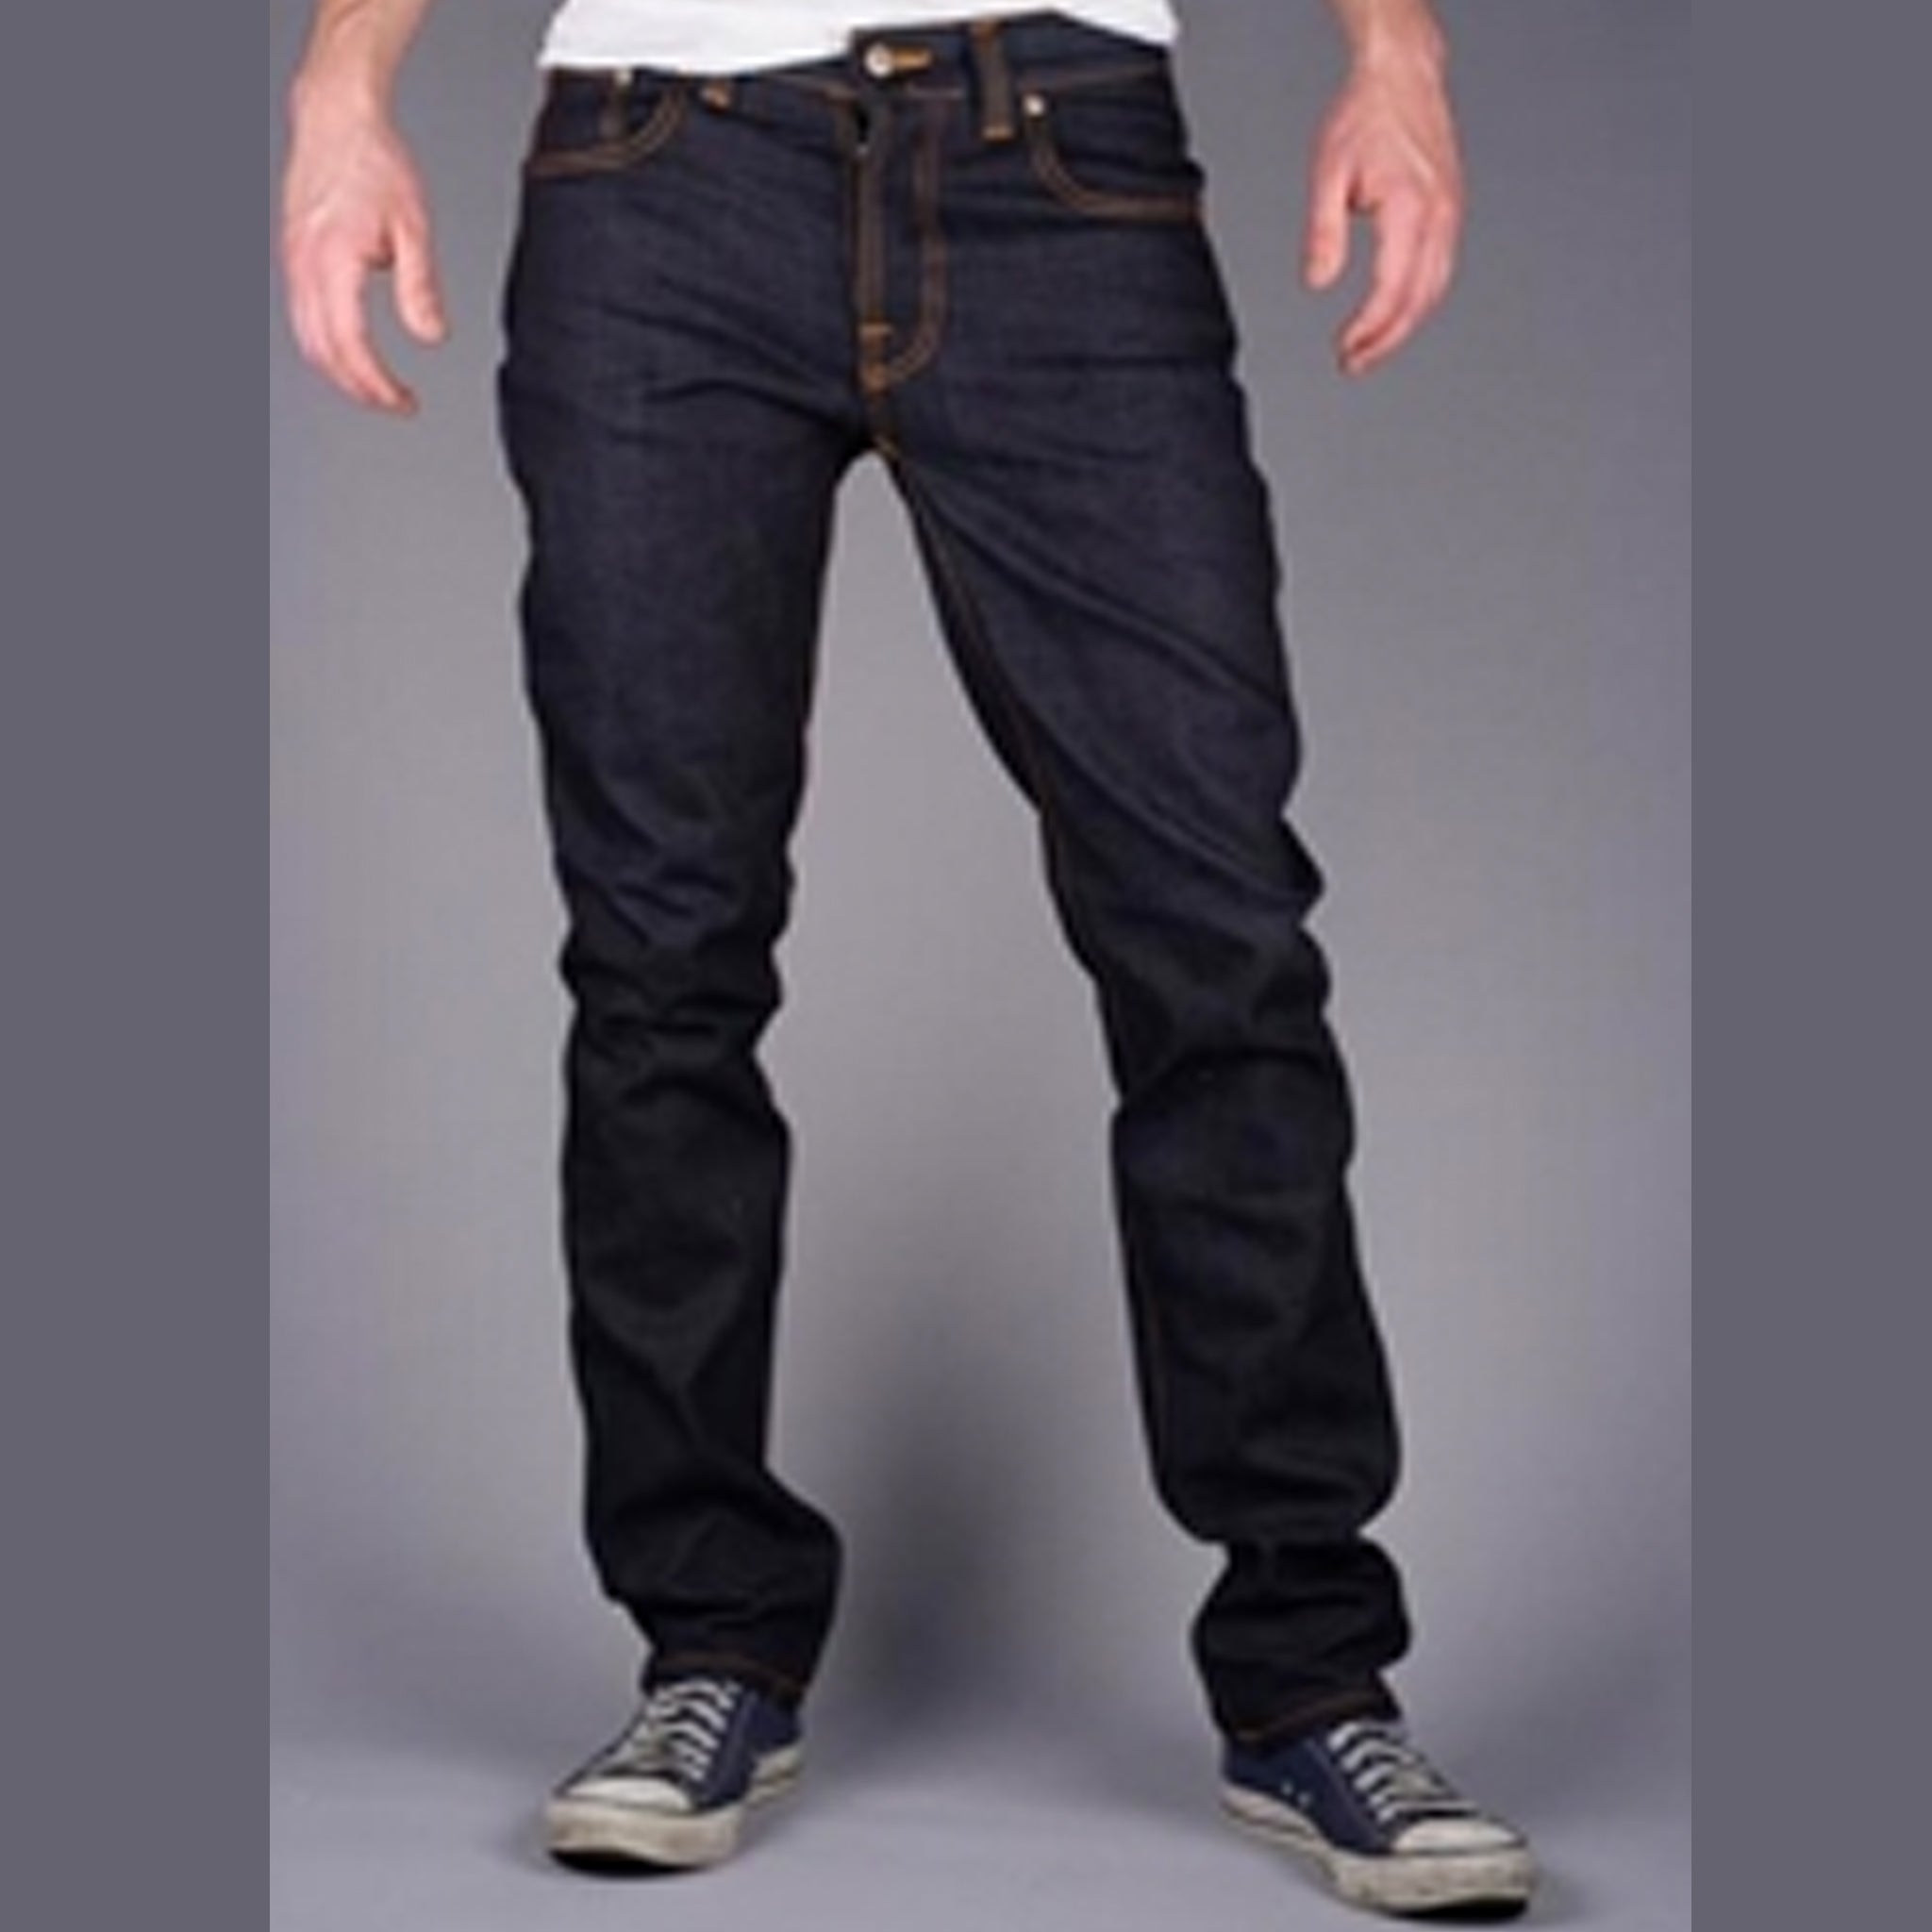 PFI Pattern #2315 Men's Casual Jeans